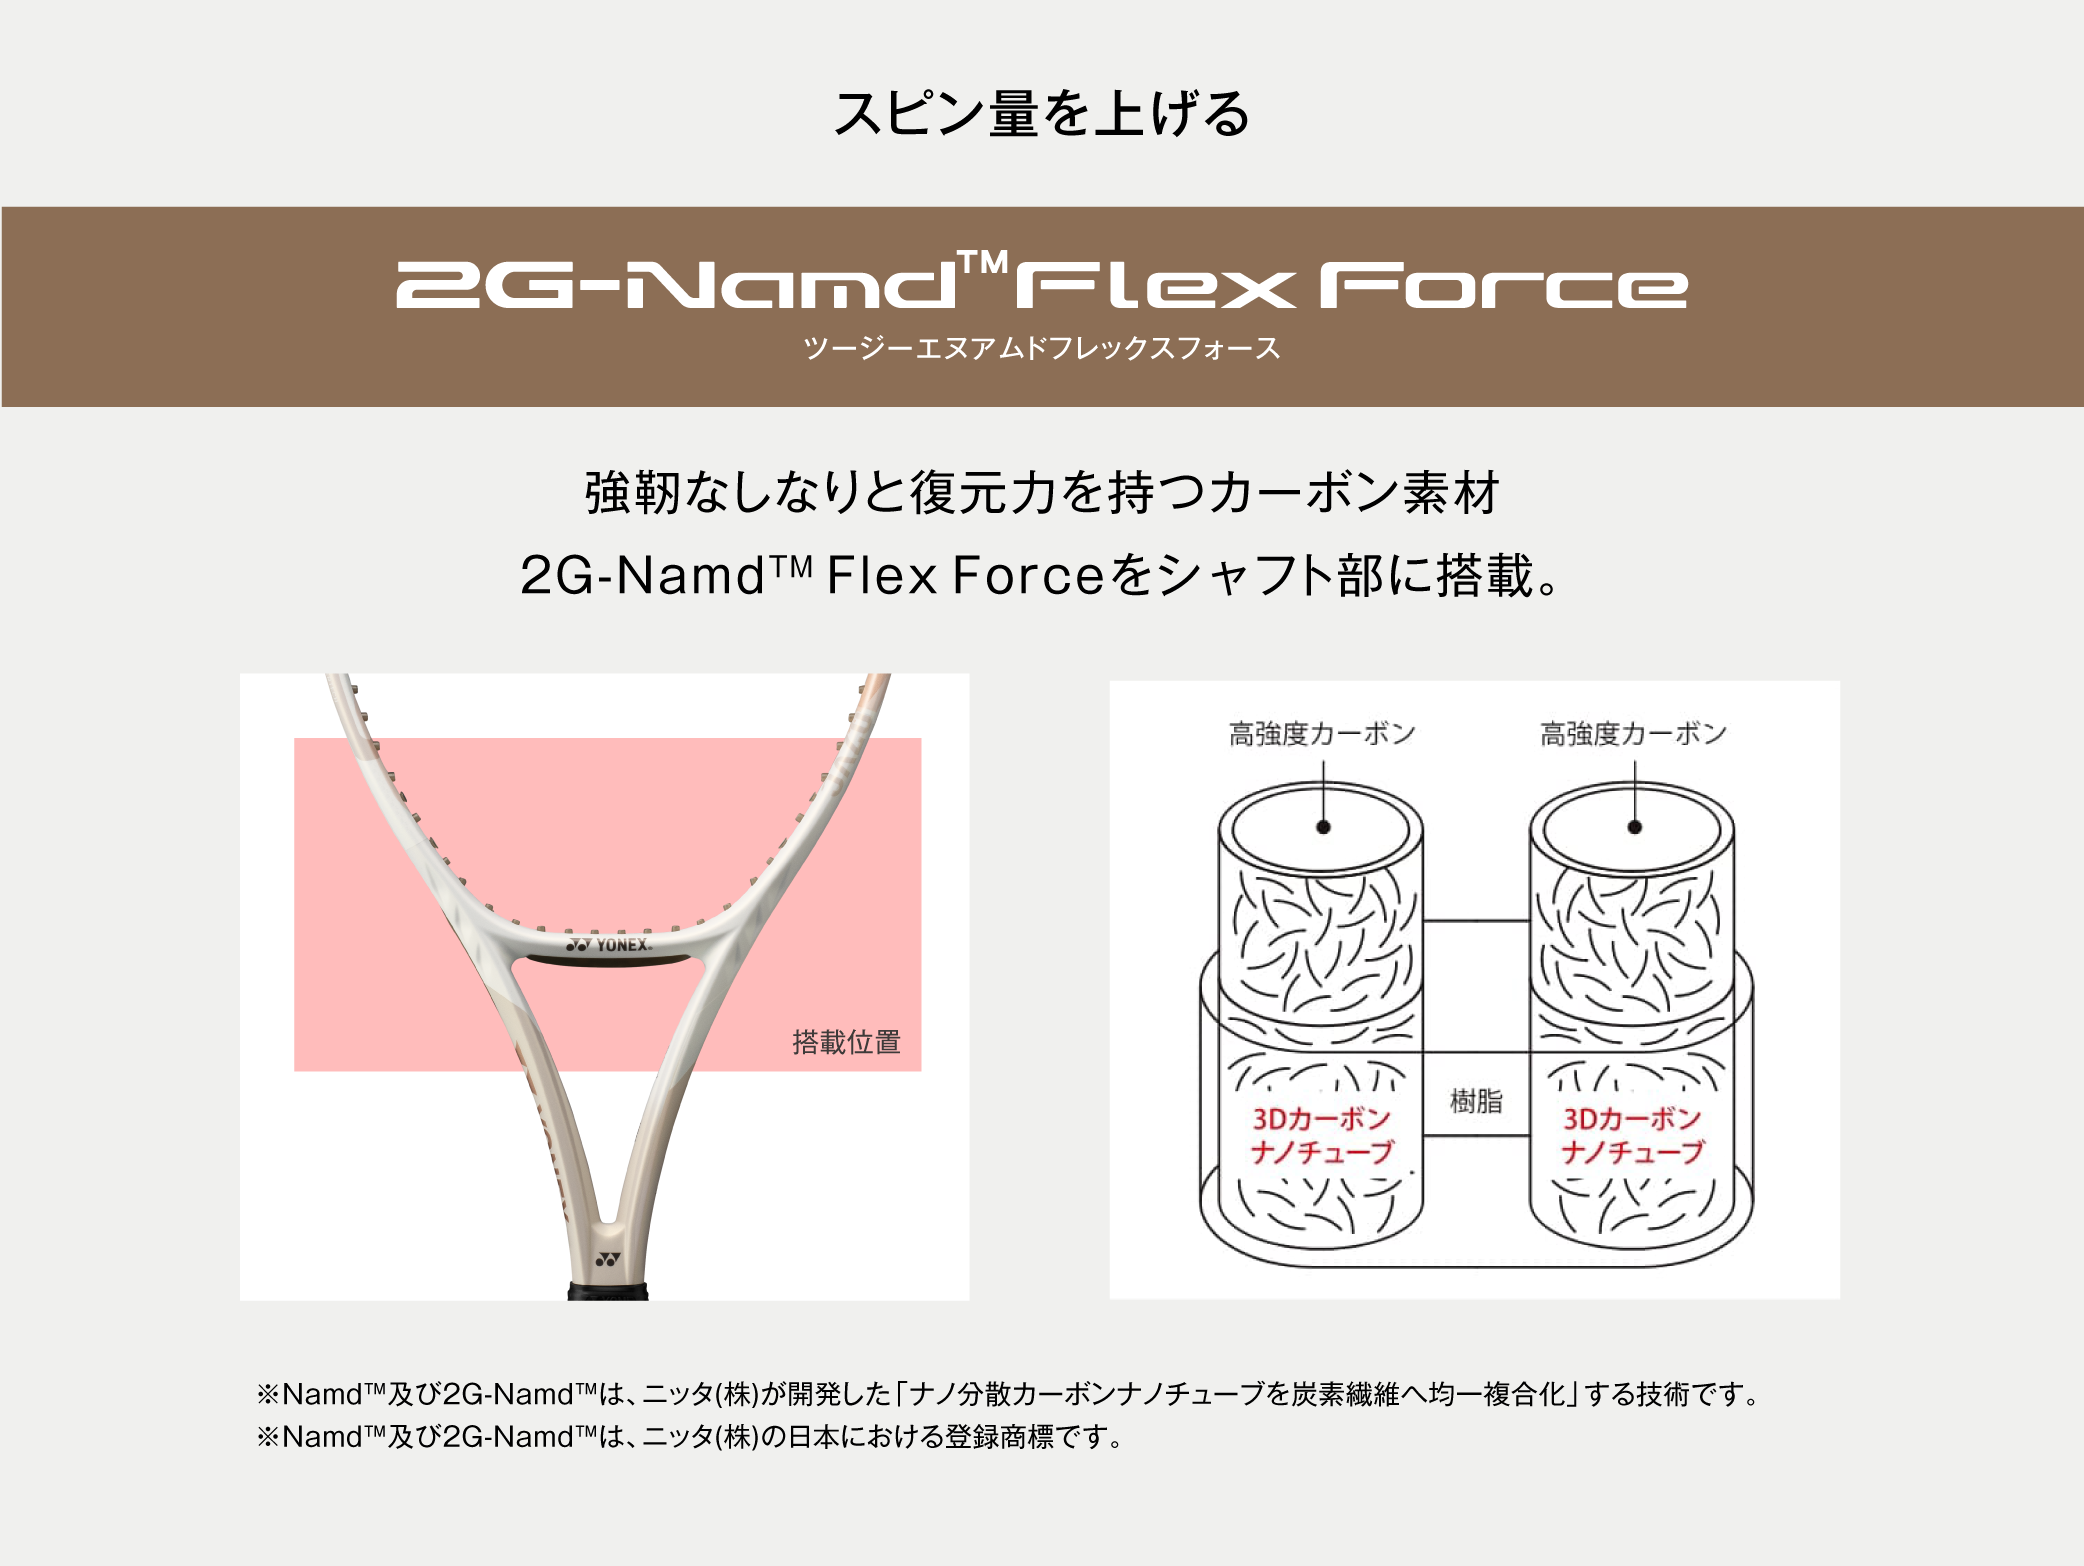 2G-Namd™ Flex Force